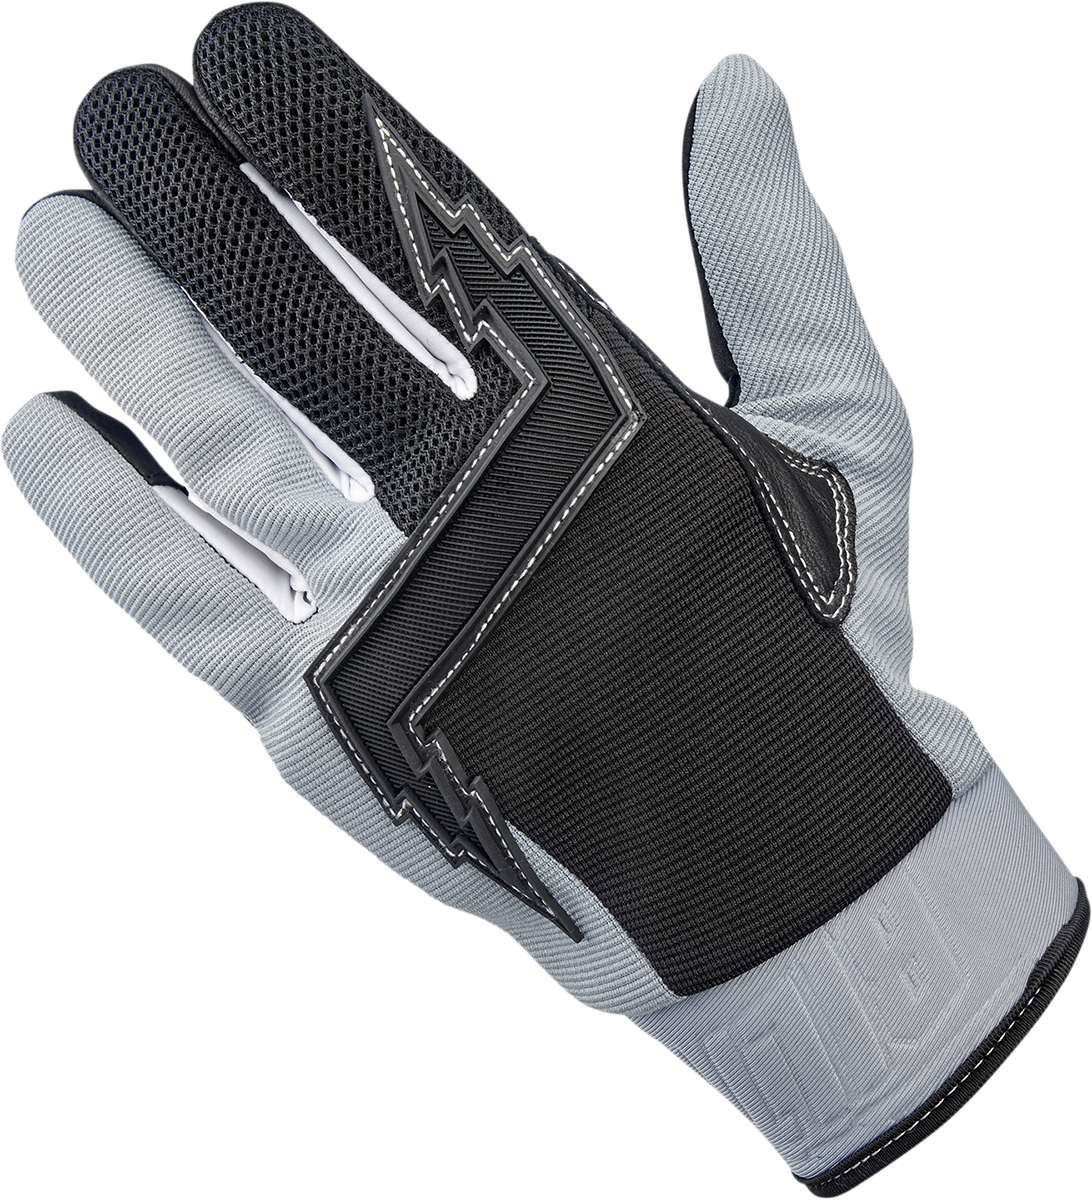 BILTWELL Baja Gloves - Gray - Small 1508-1101-302